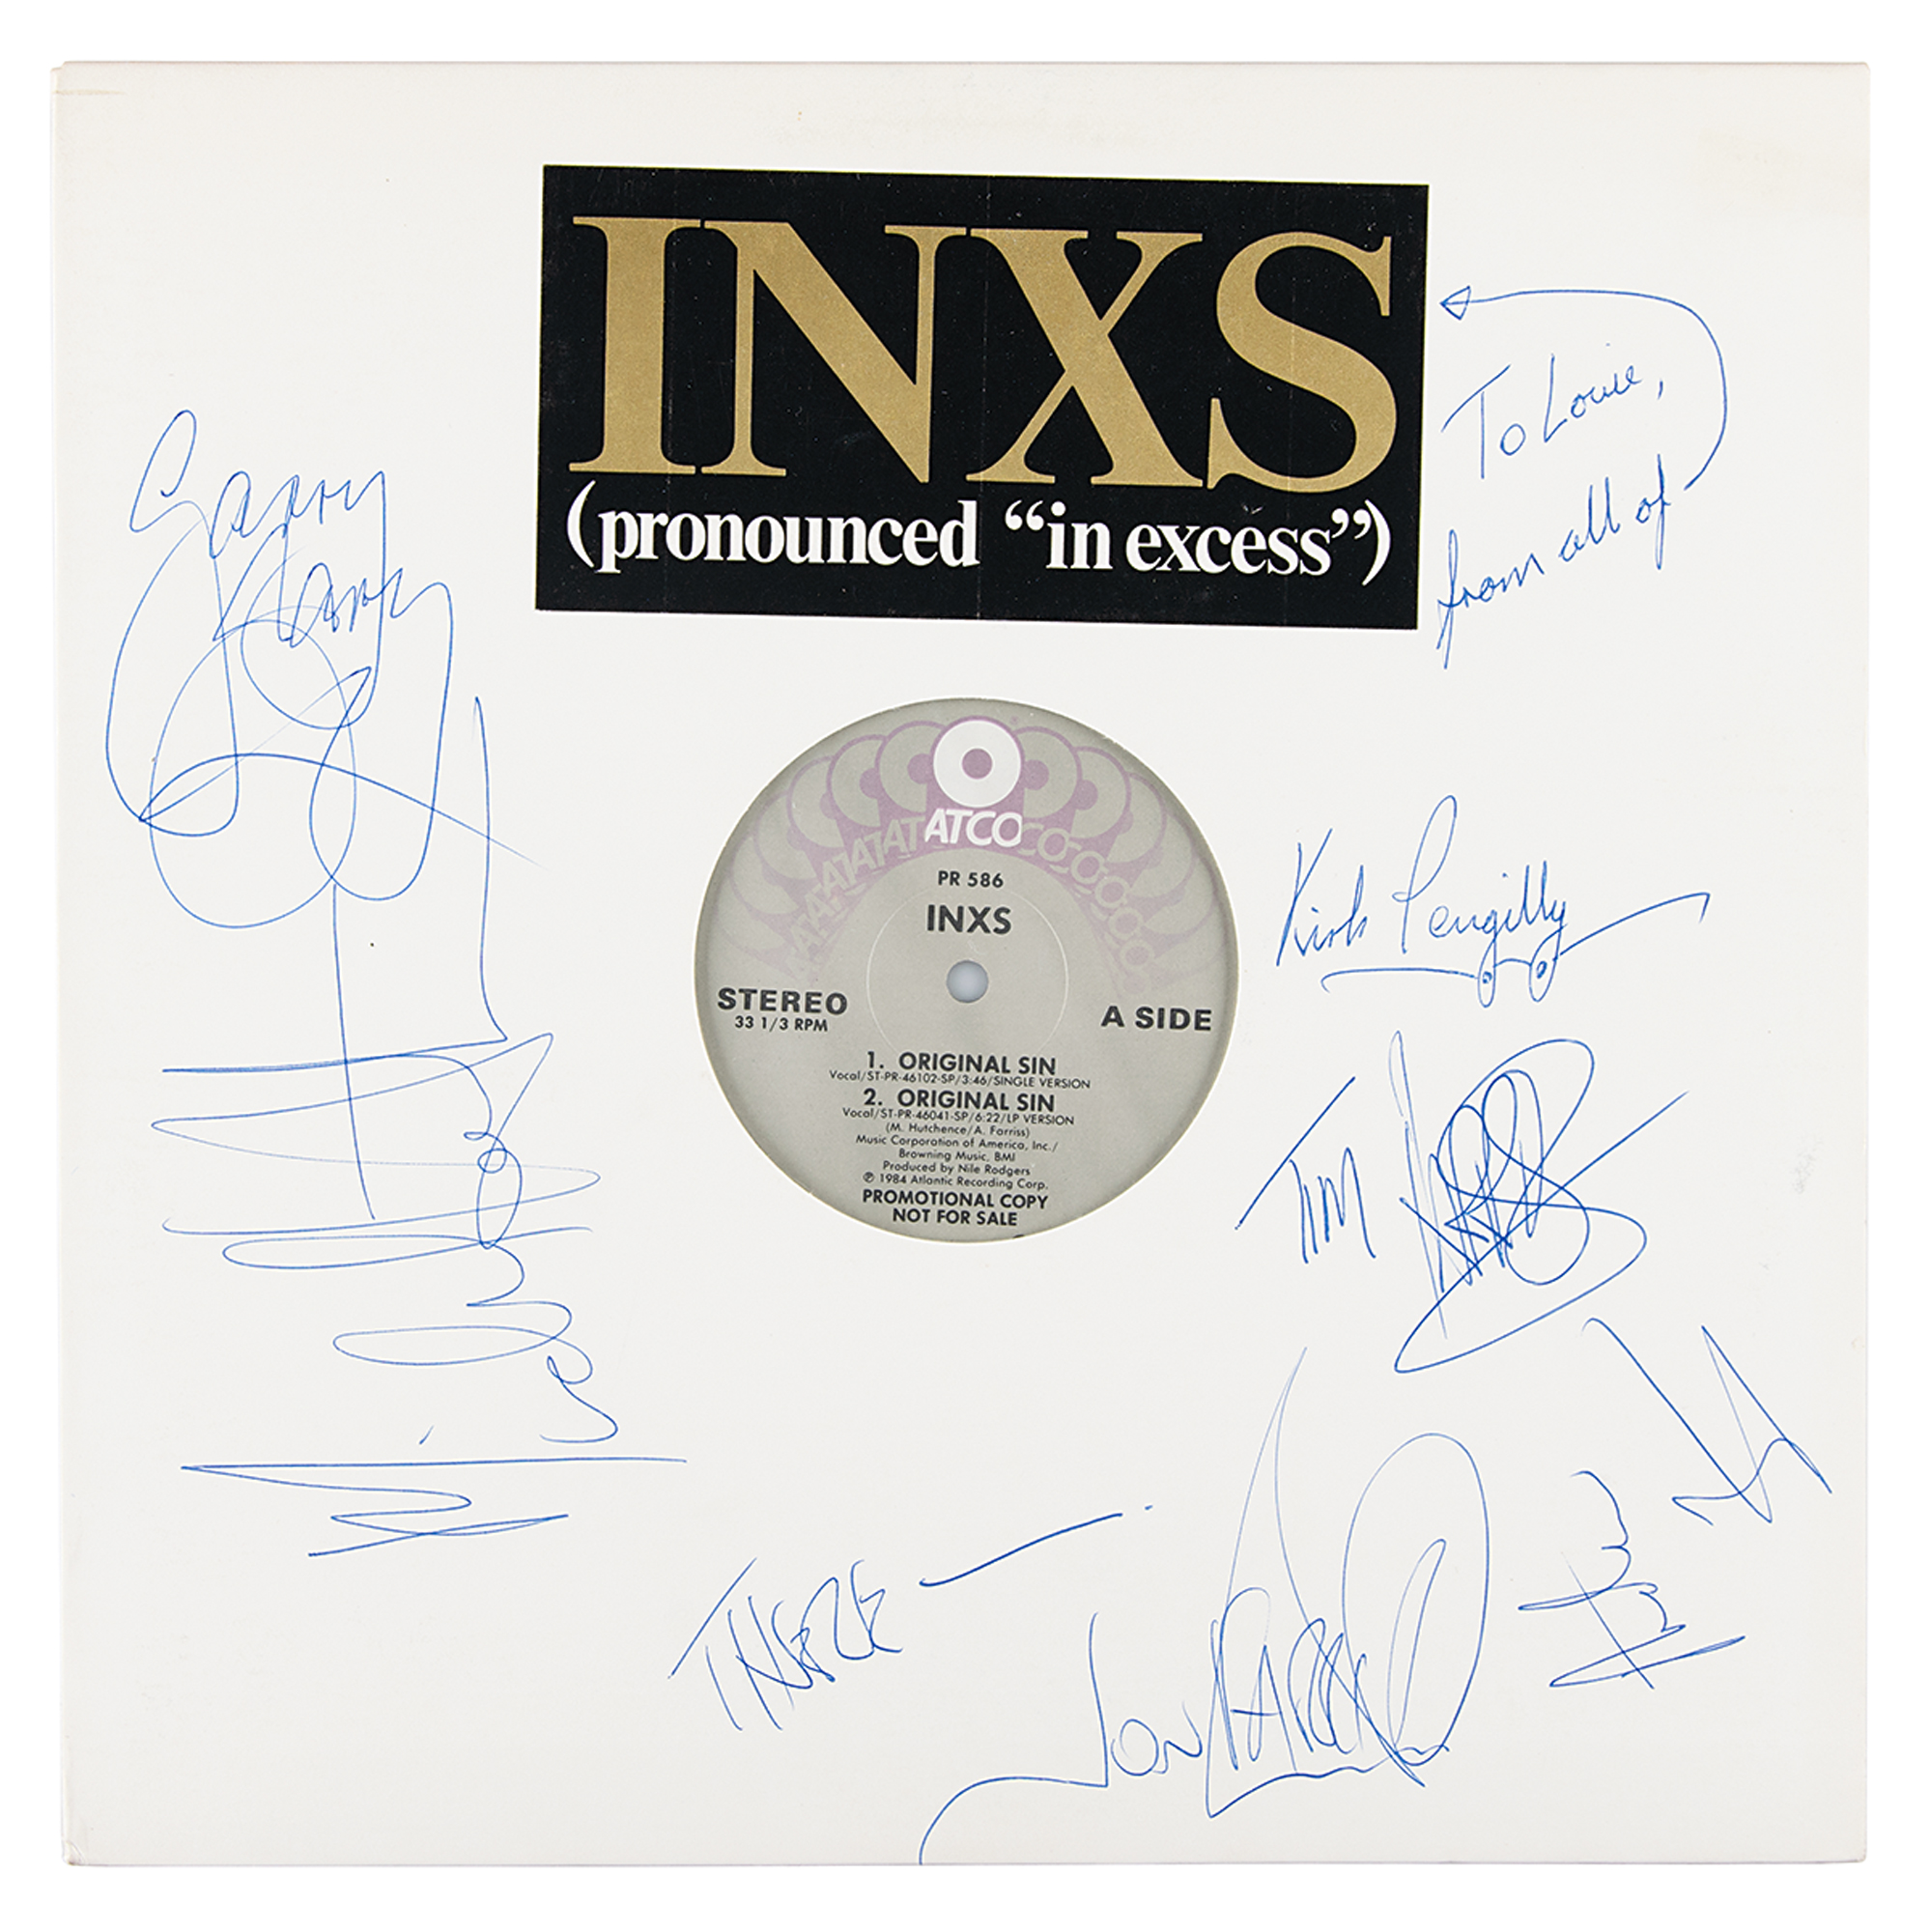 Lot #662 INXS Signed Album